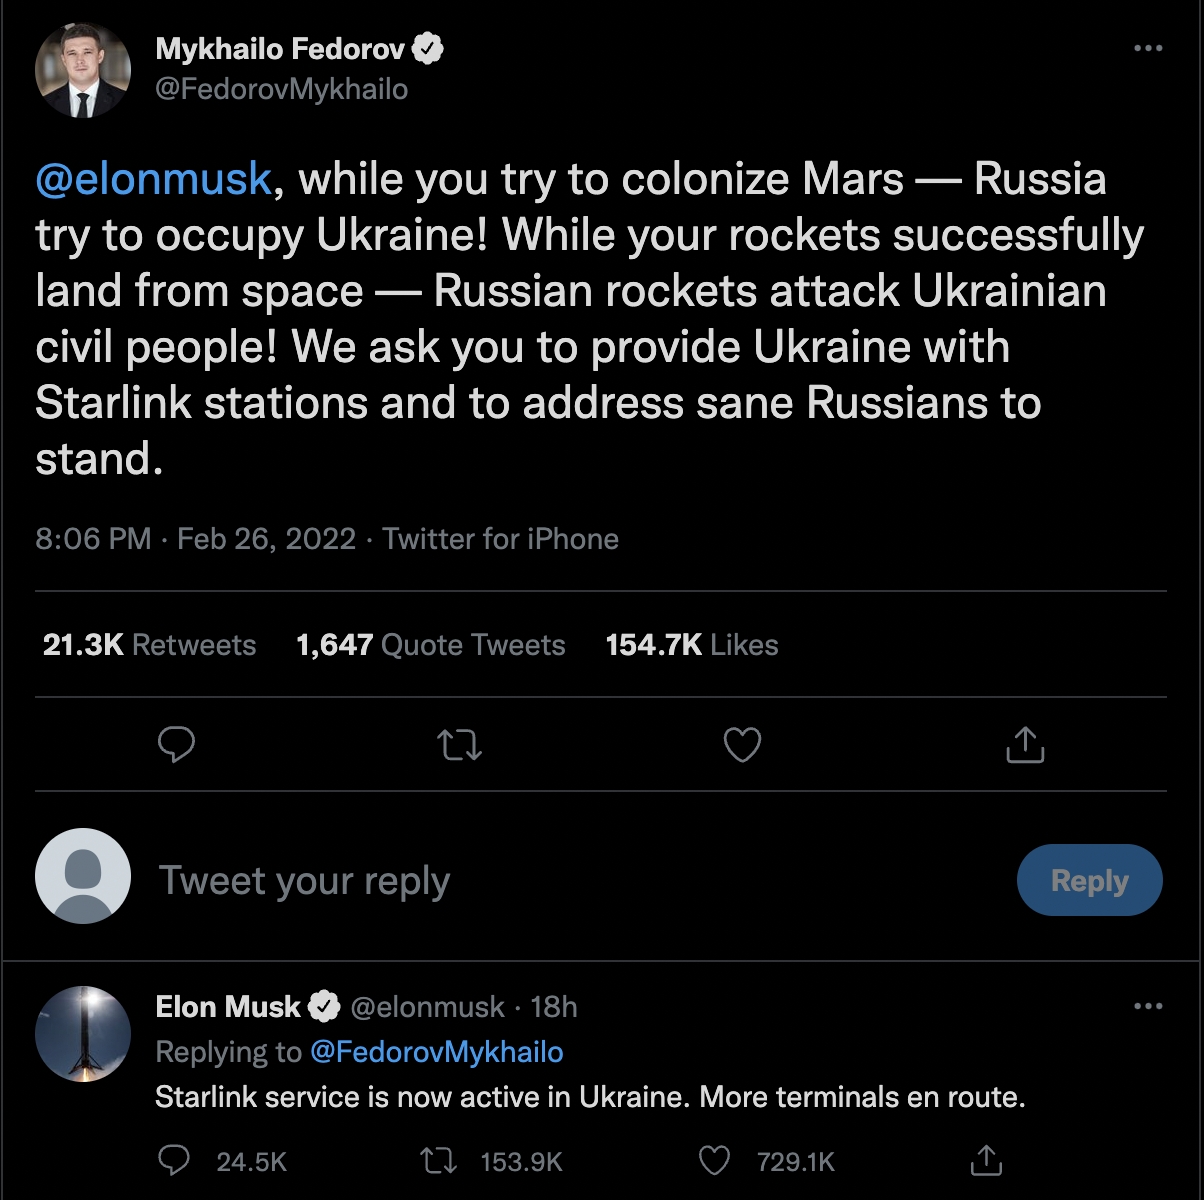 烏克蘭副總理兼數位化轉型部部長 Mykhailo Fedorov 也向全球首富馬斯克提出救援請求